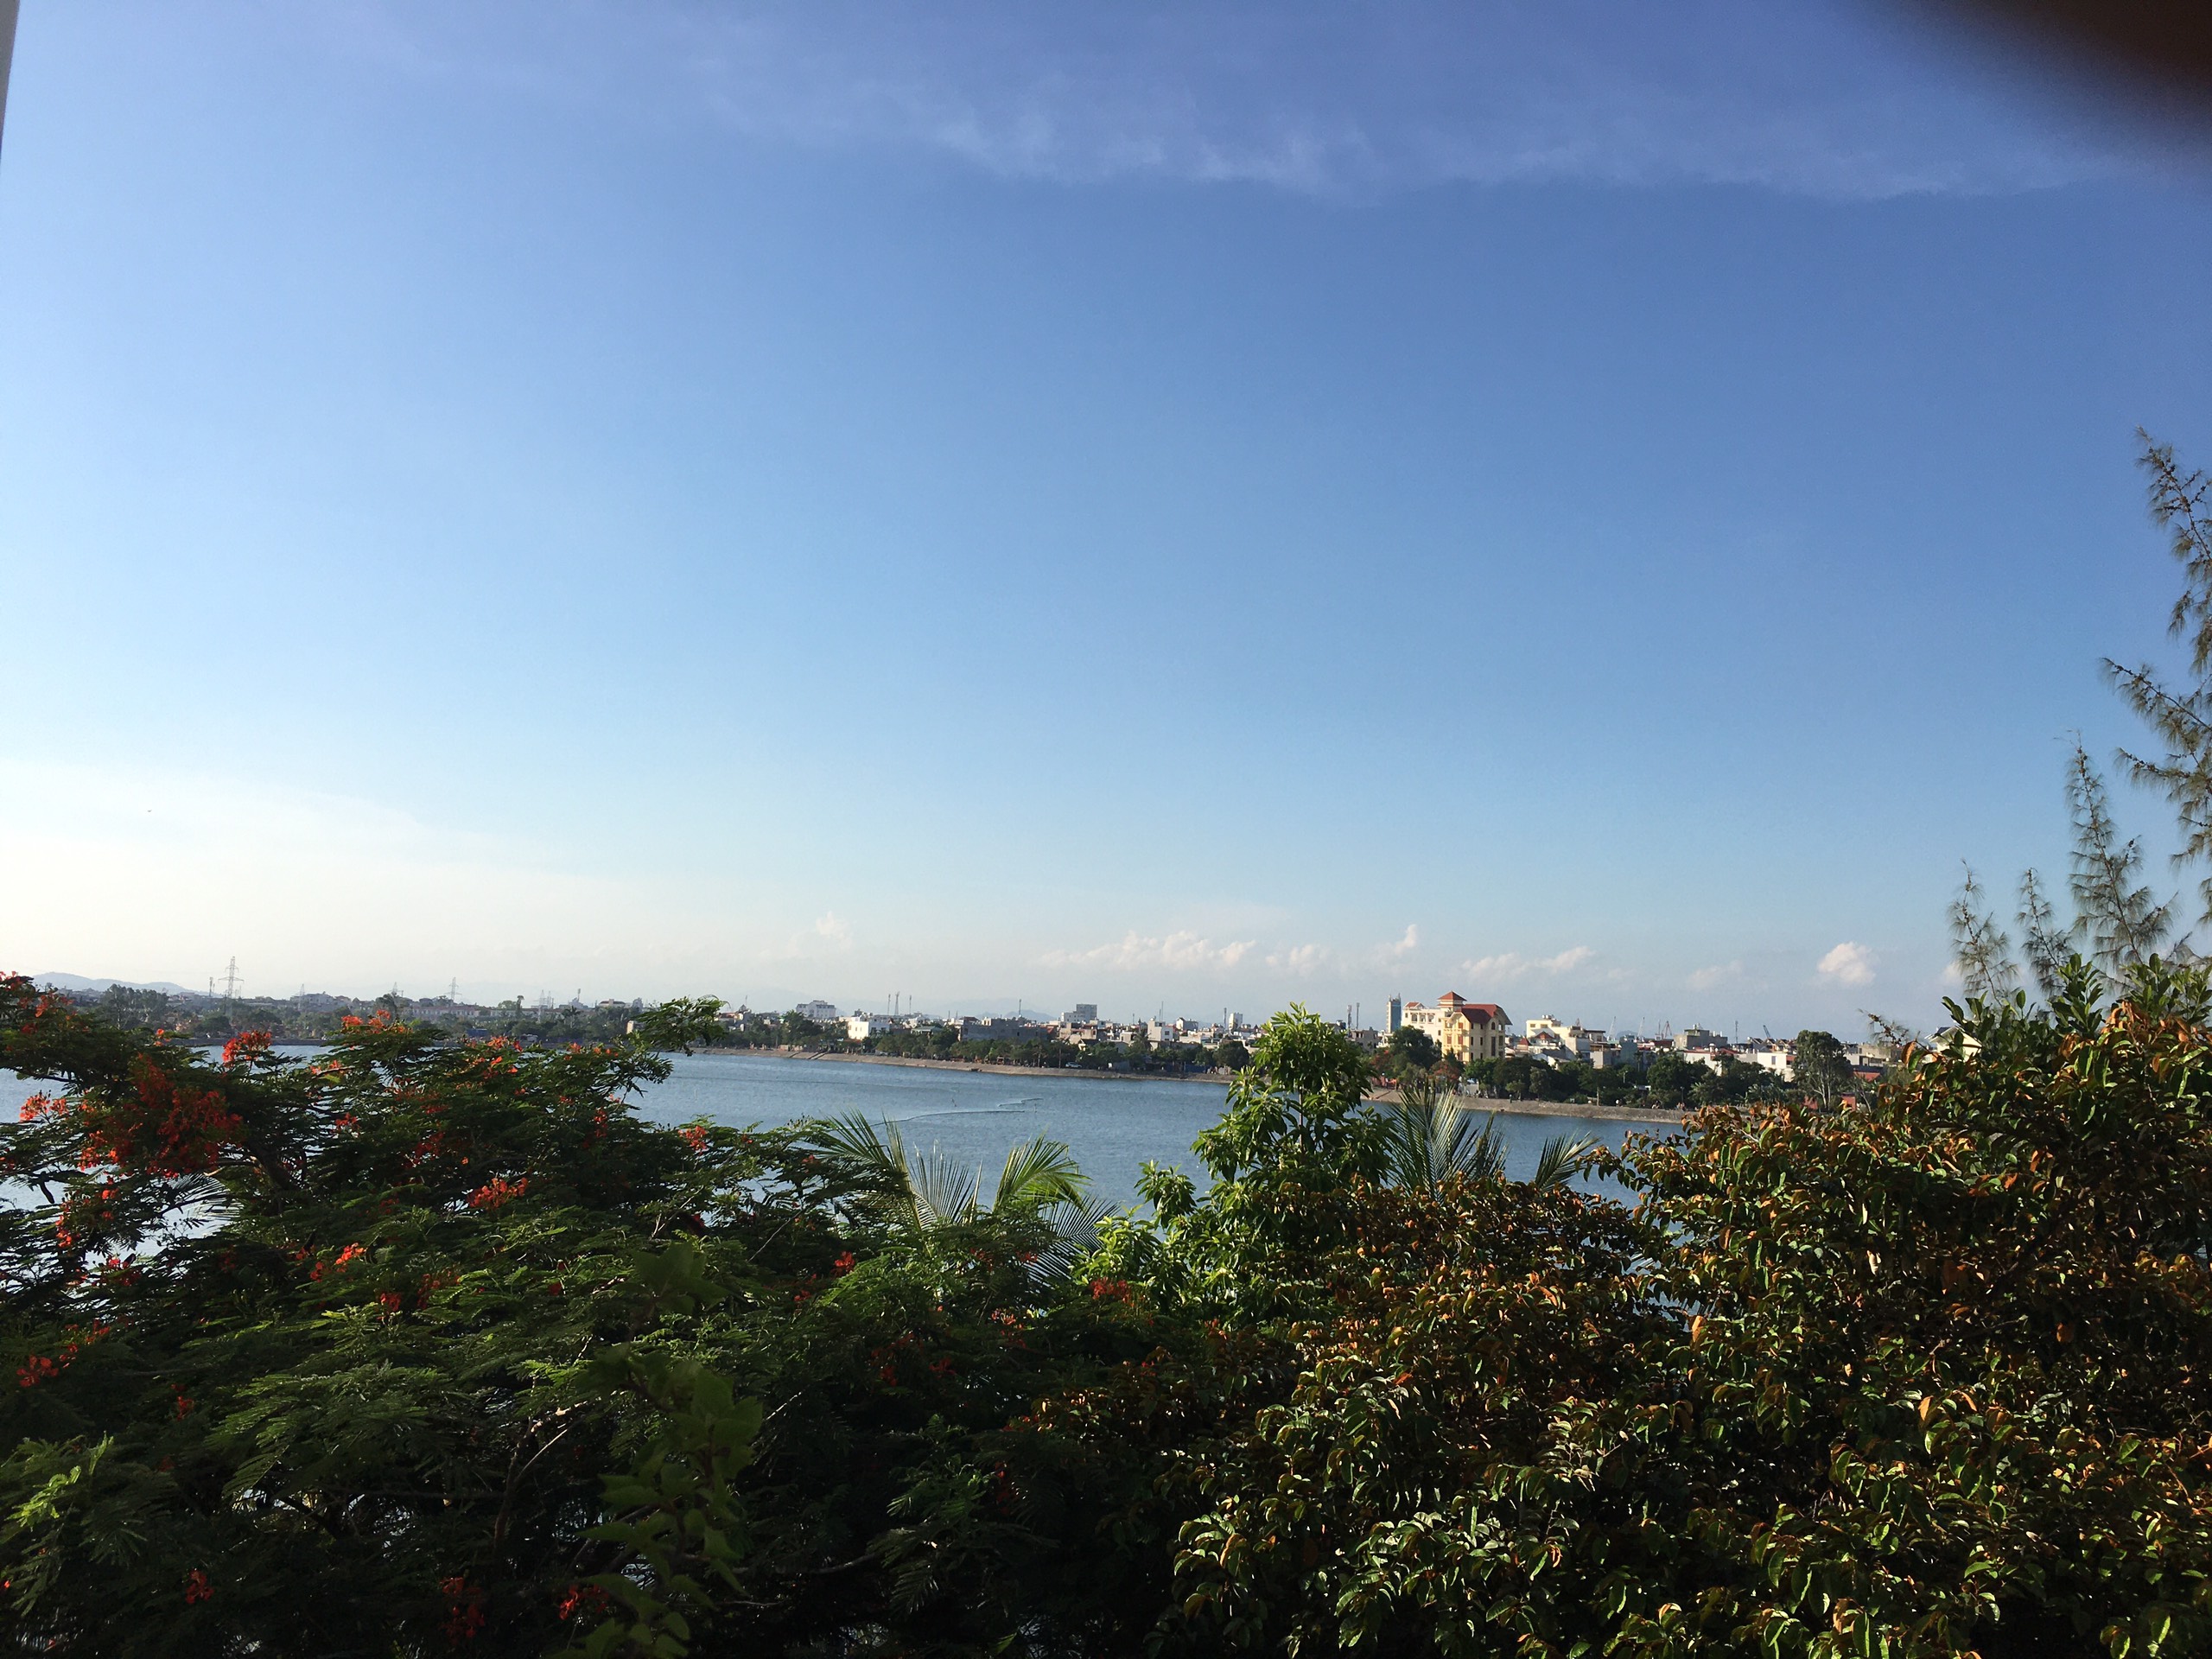 Chuyển nhượng mặt đường Hoàng Thế Thiện, View hồ Phương Lưu, Hải An, Hải Phòng